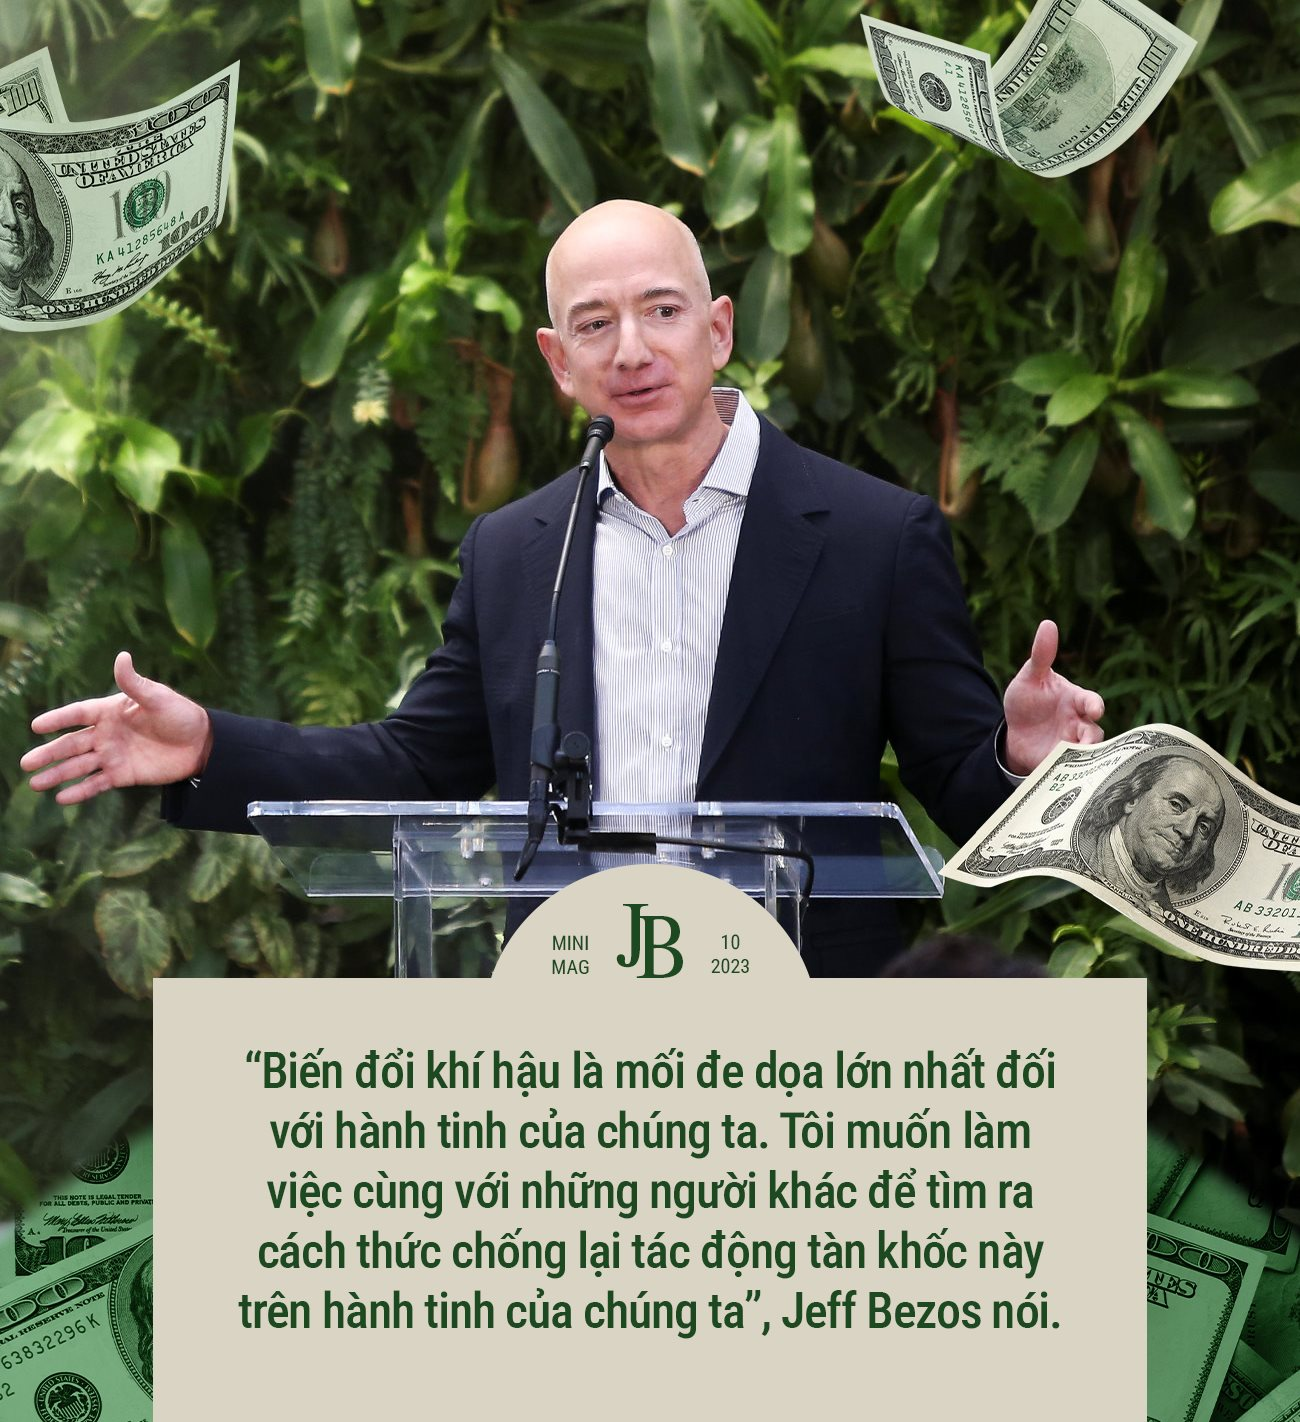 150 tỷ USD tiền từ thiện của Jeff Bezos: Đến từ mồ hôi nước mắt của nhân viên Amazon, cho đi chỉ vì sợ nhận chỉ trích? - Ảnh 3.